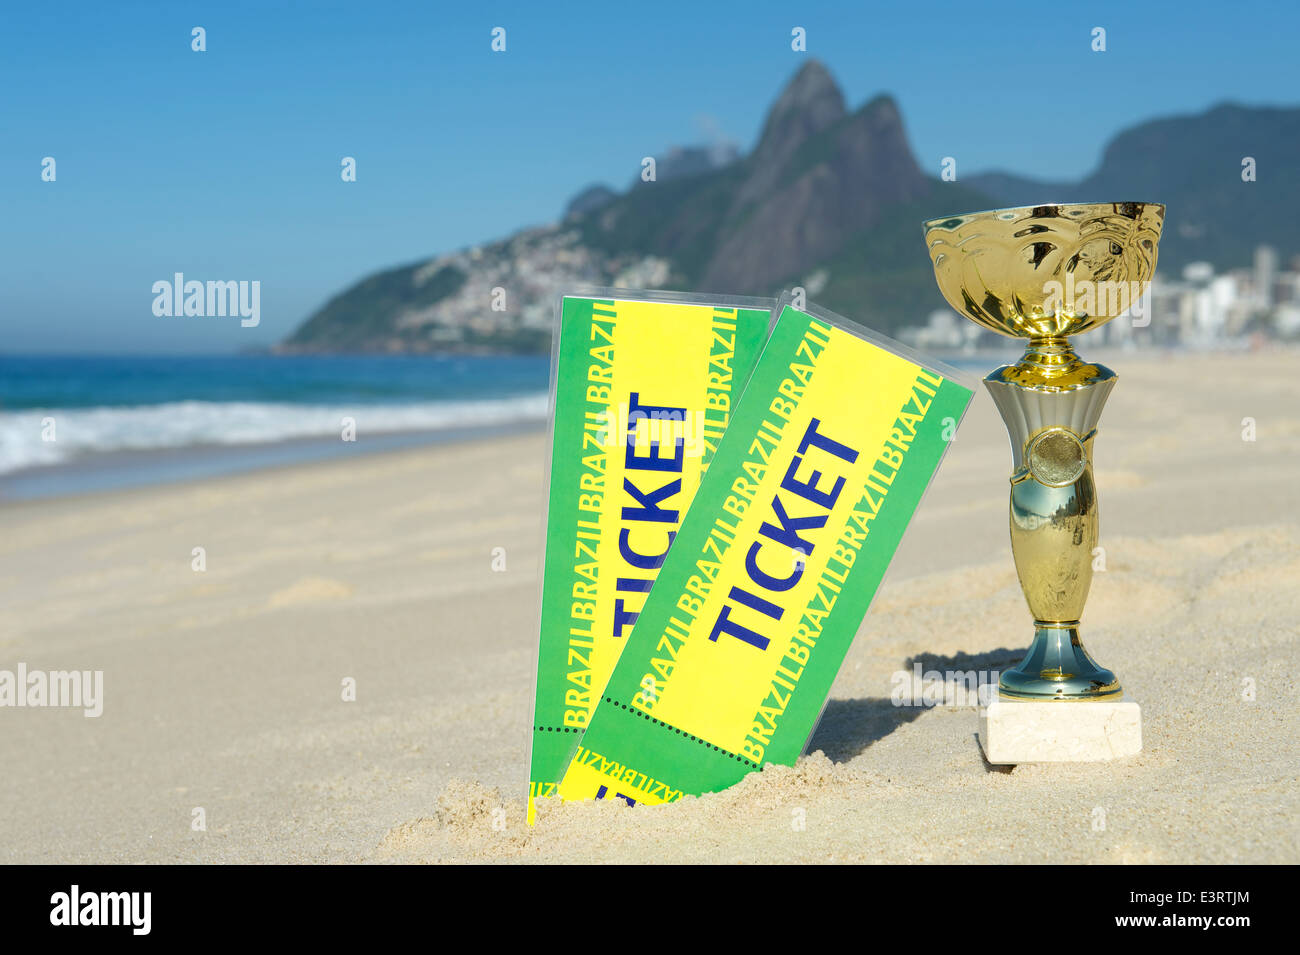 Le Brésil champion soccer trophy avec les billets de la plage d'Ipanema Rio de Janeiro Brésil Banque D'Images